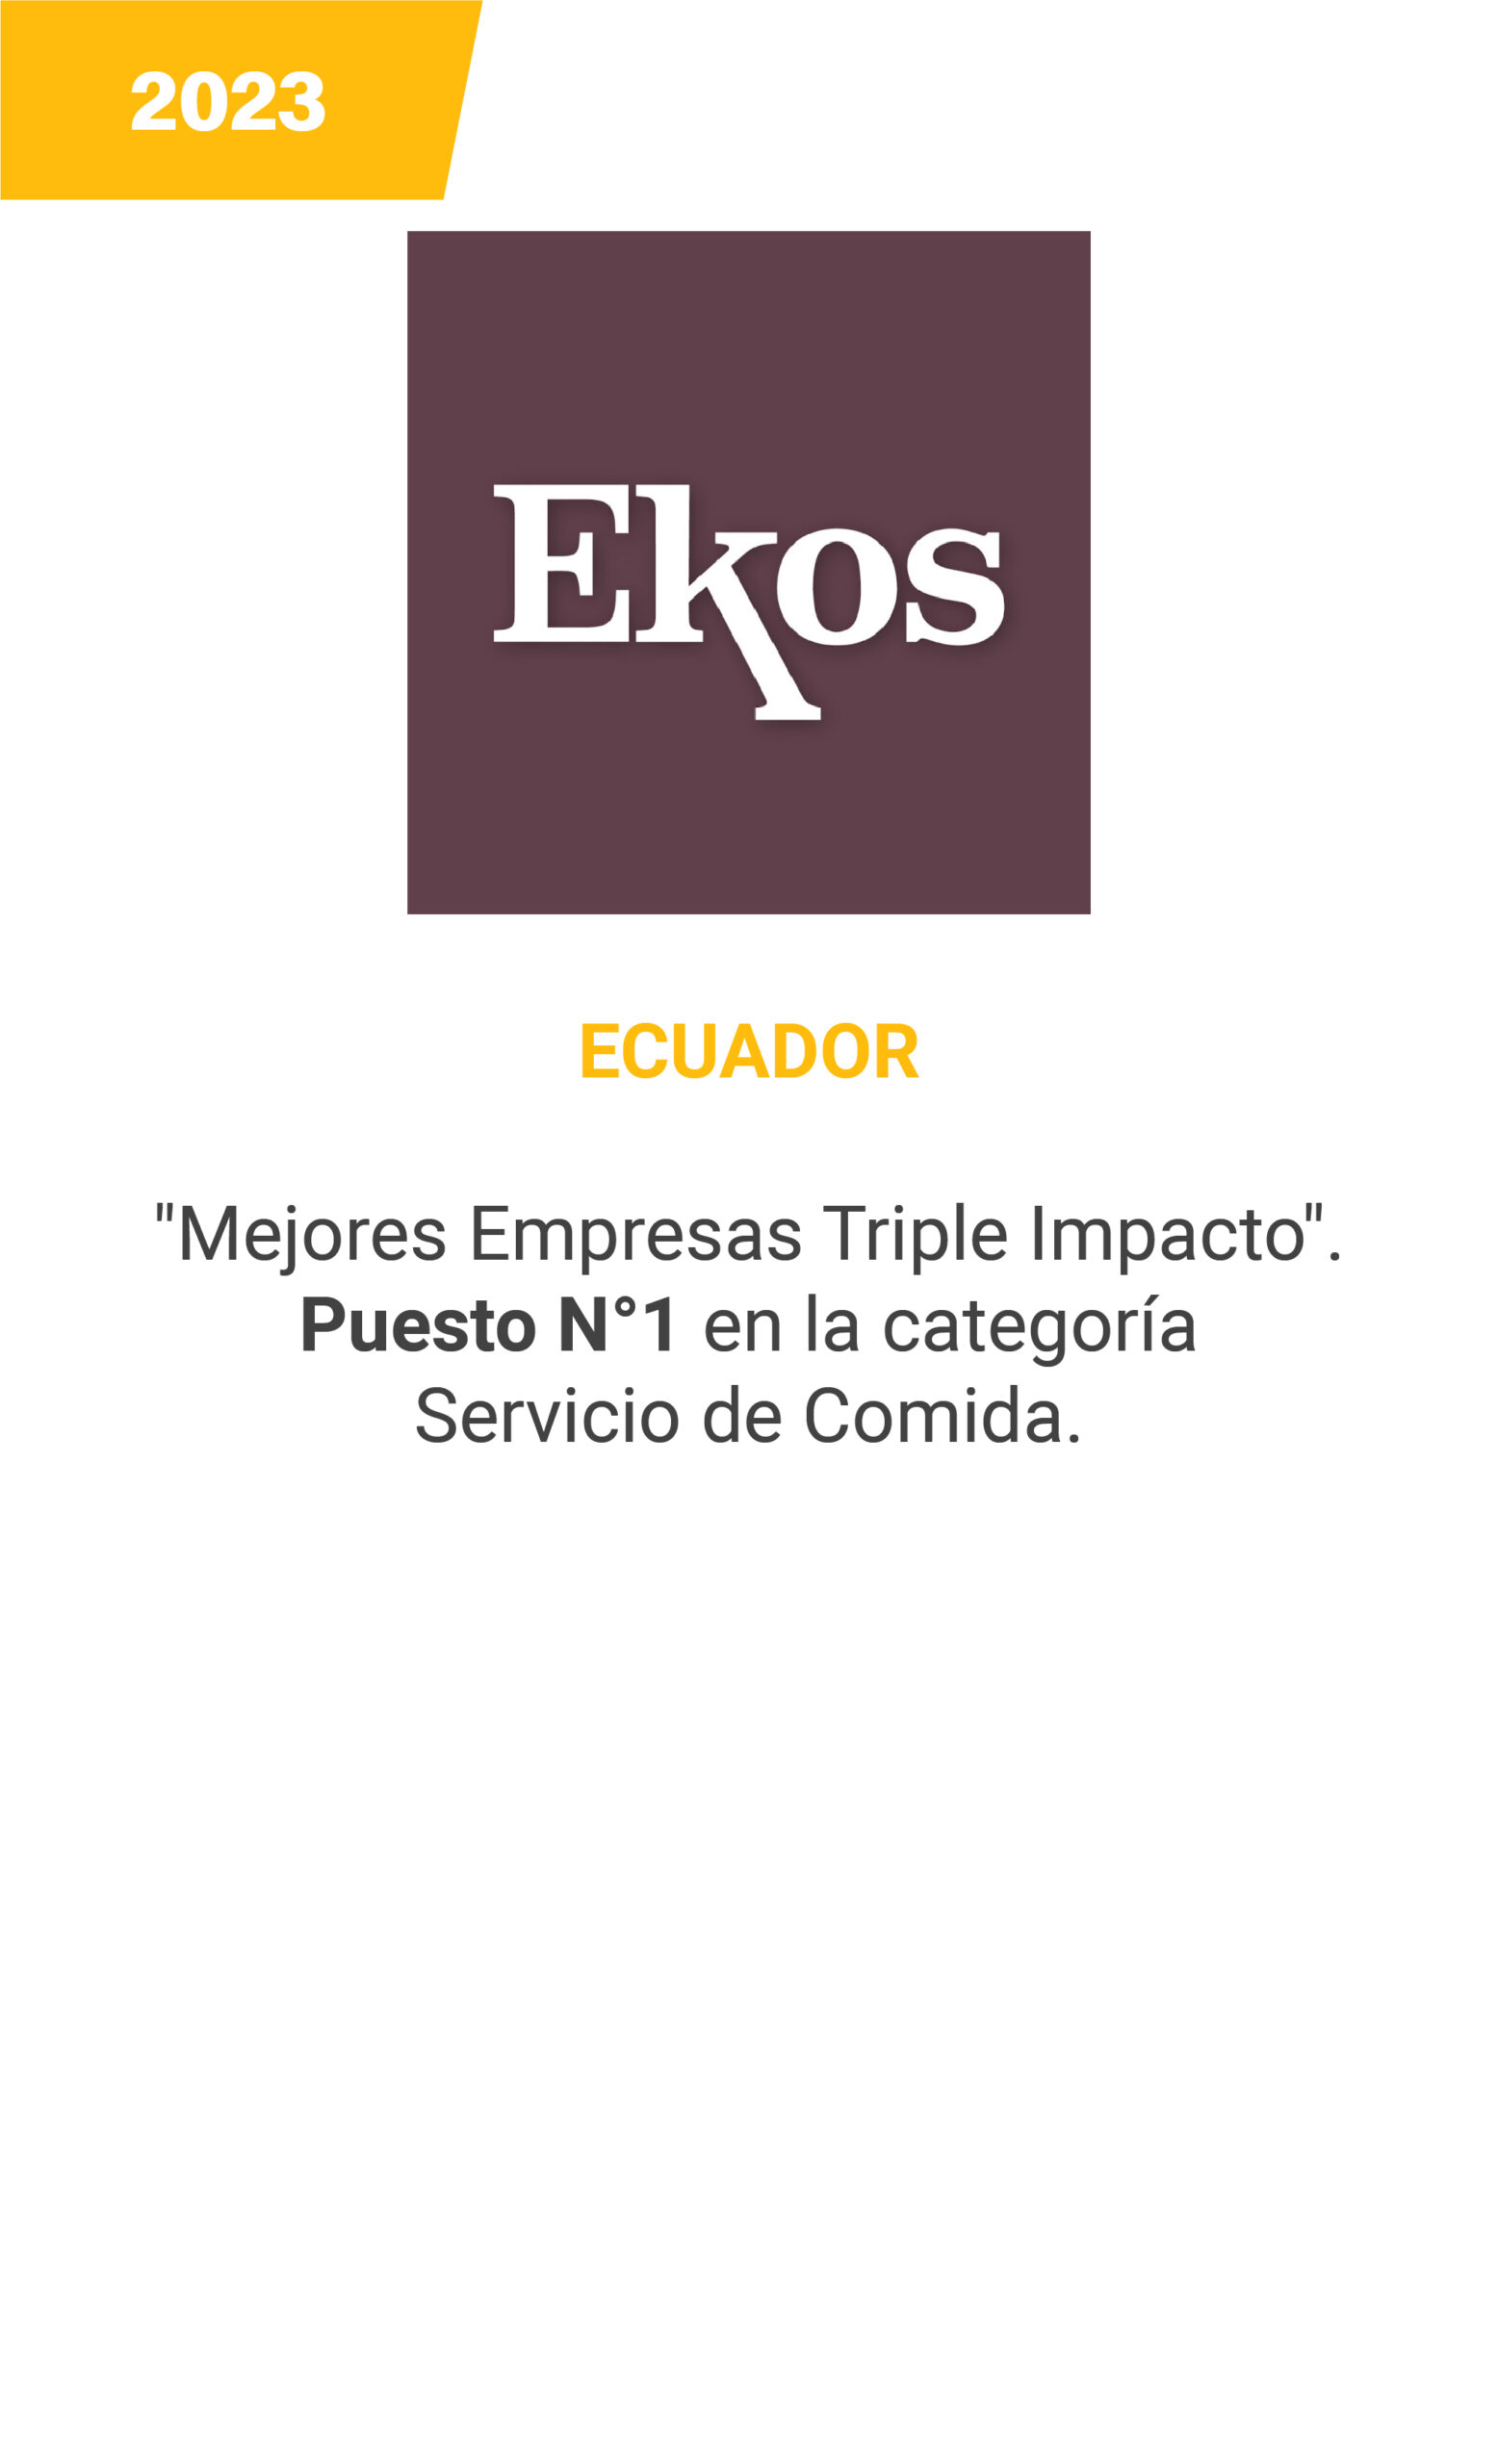 Ekos - Ecuador - mobile